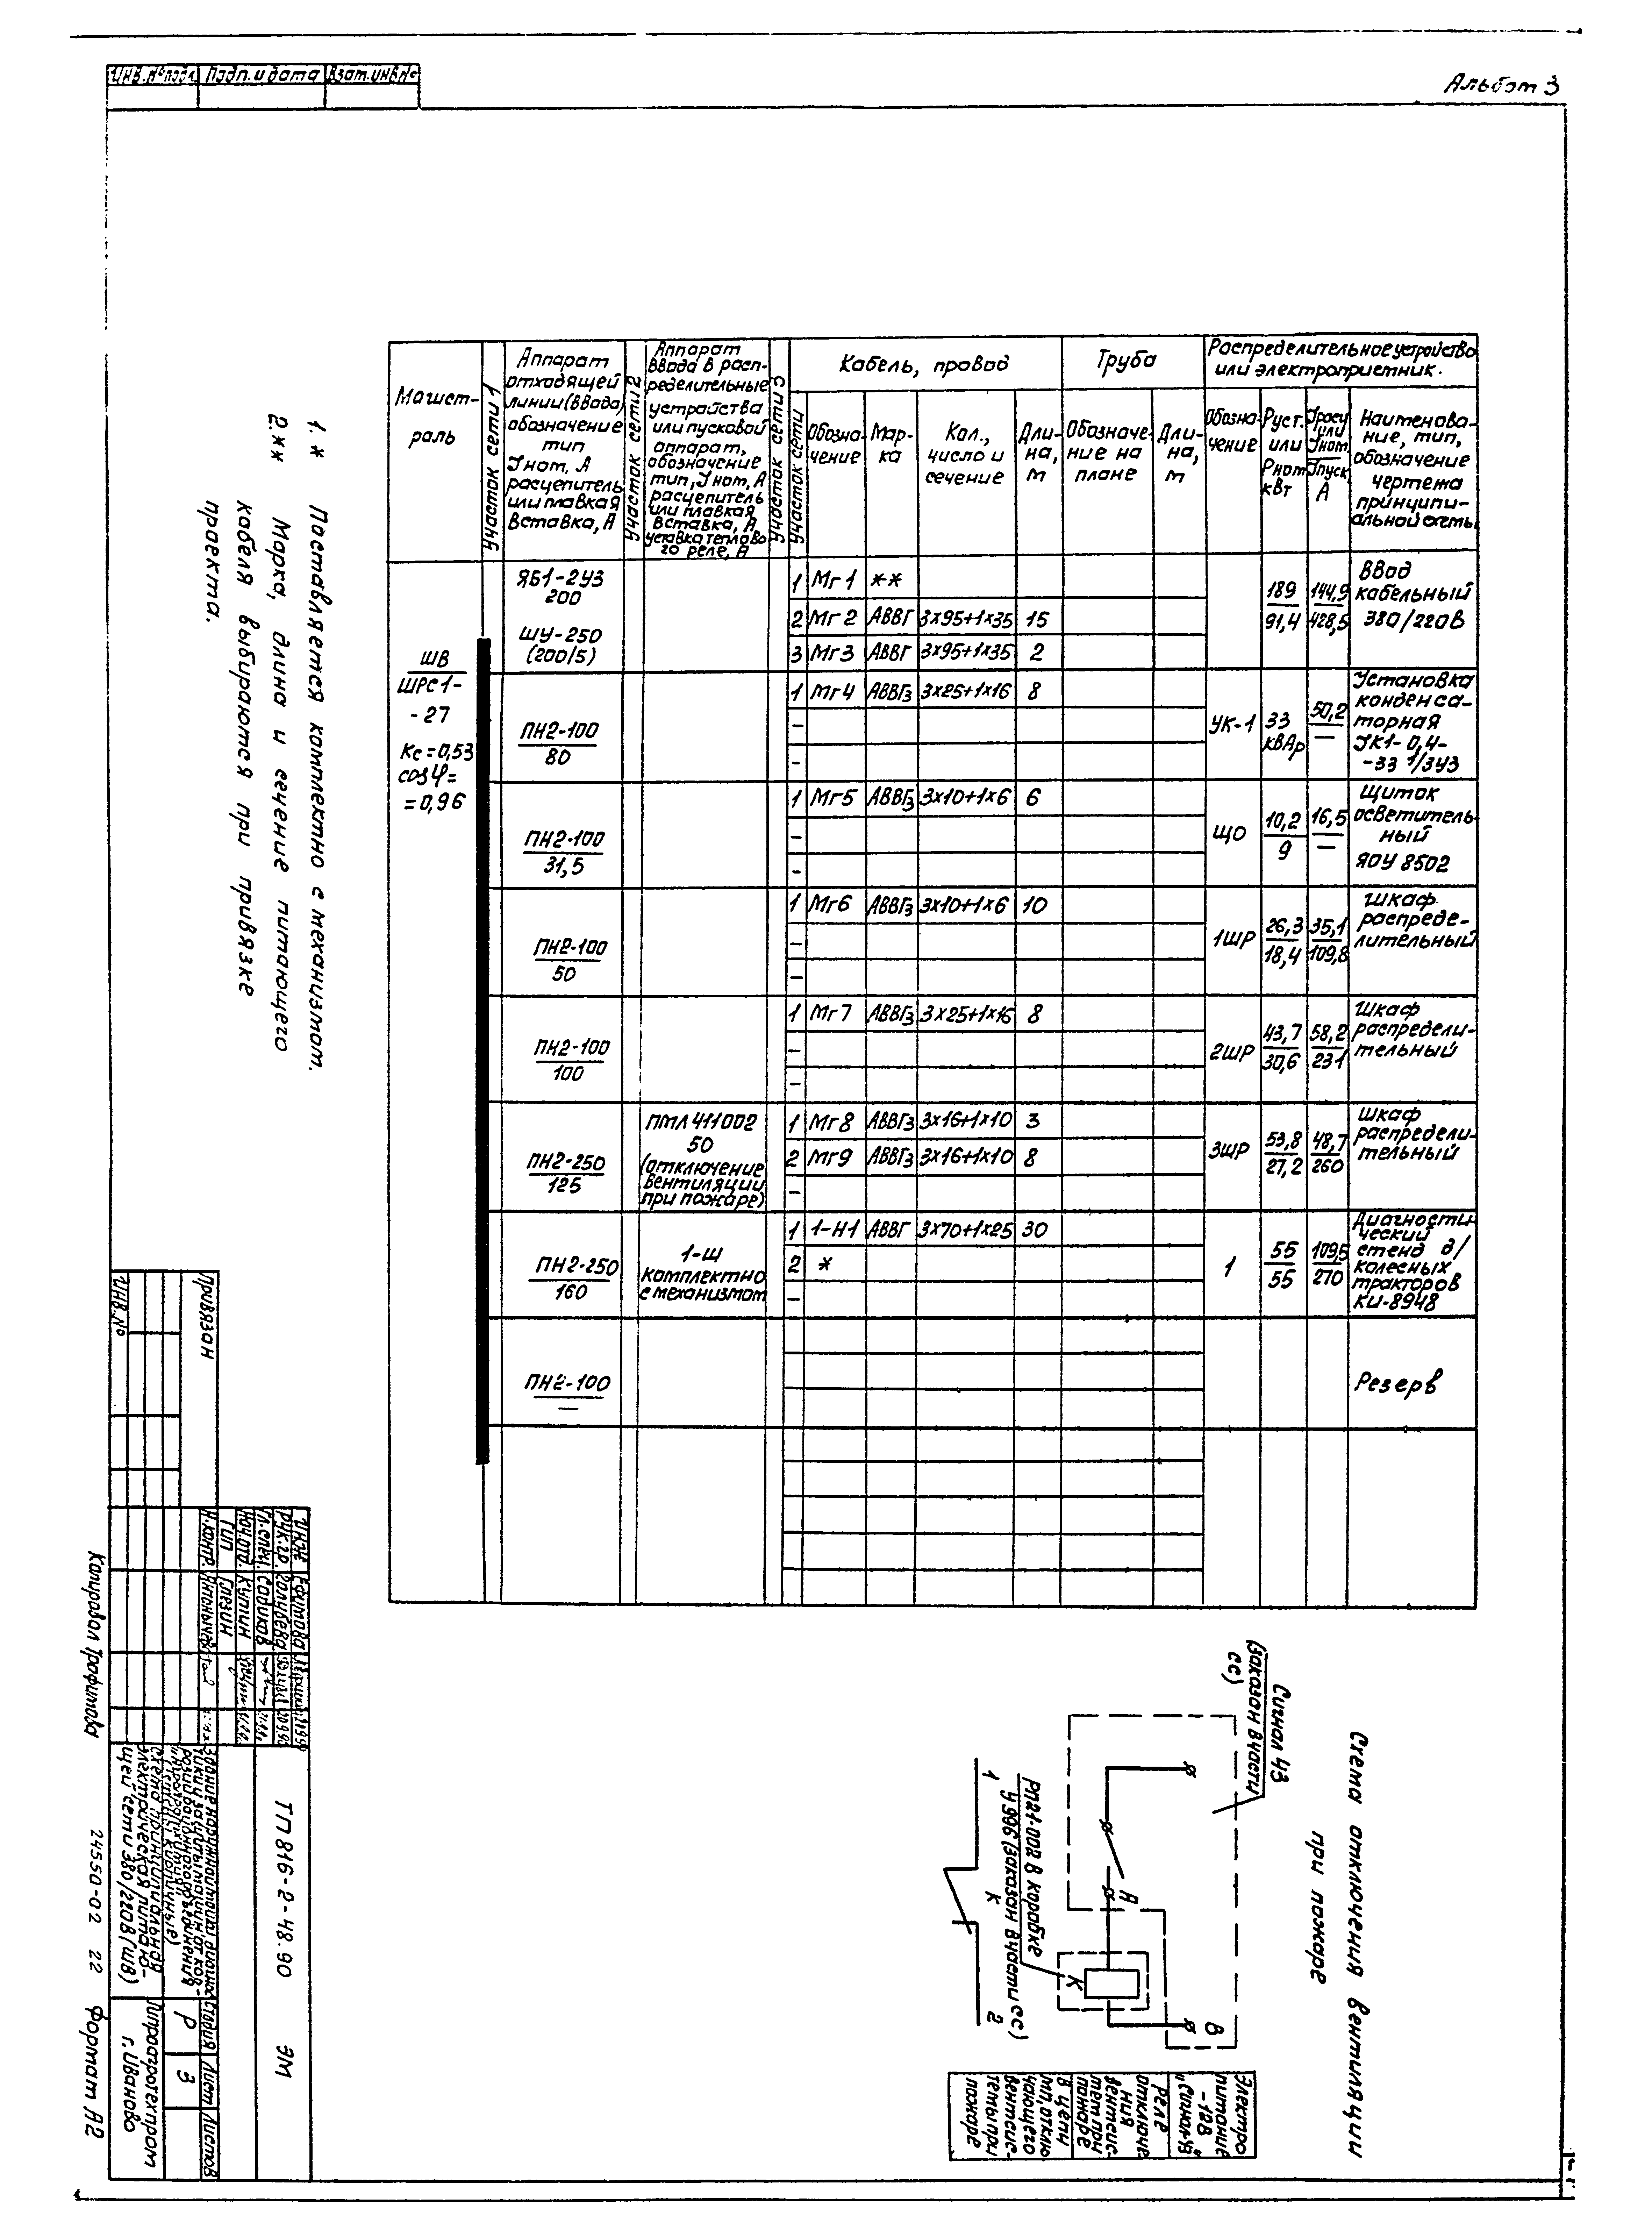 Типовой проект 816-2-48.90